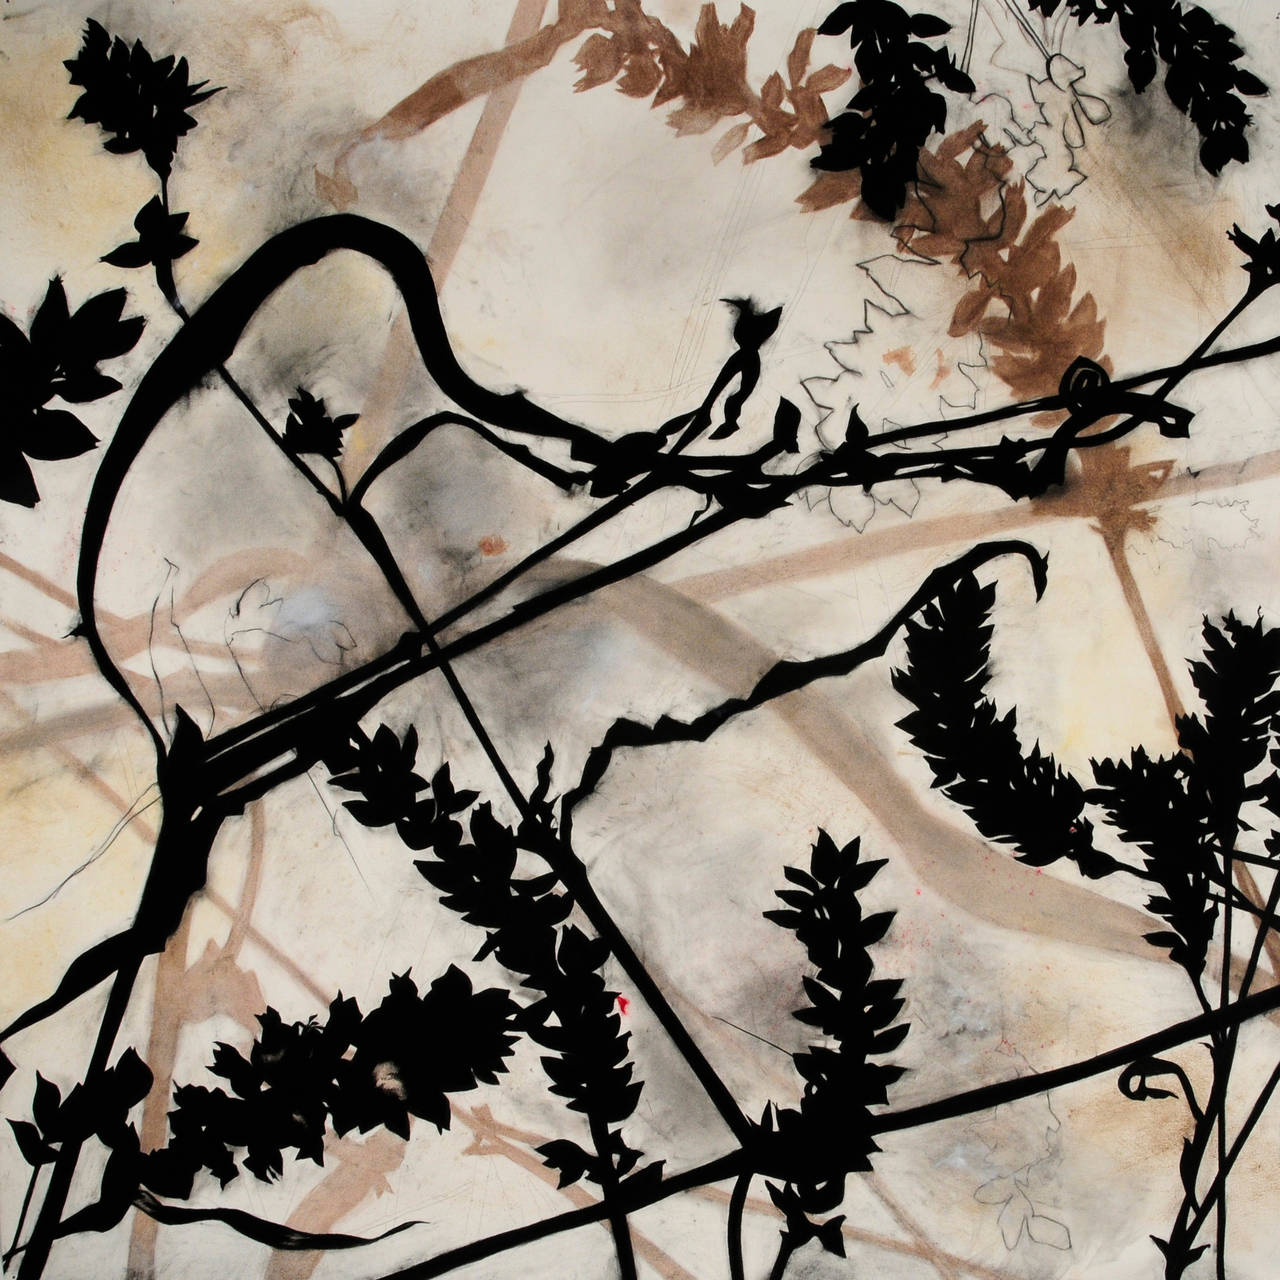 Suzi Davidoff Landscape Art - Madera Canyon Cycle - Caimancillo, 10/2014